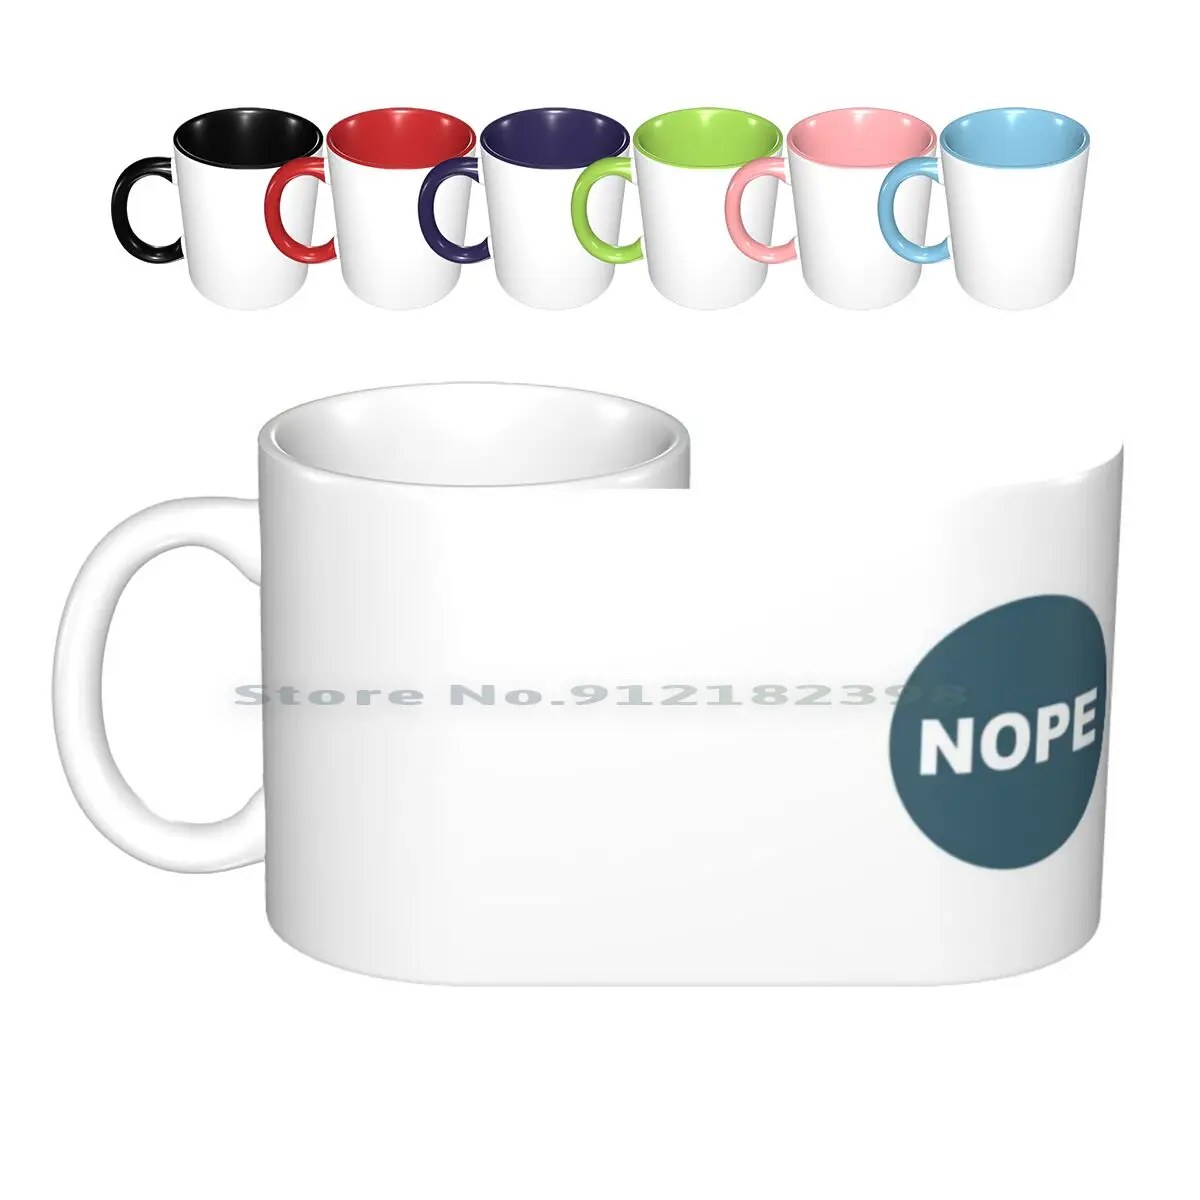 

Кружка Max's Nope, керамические кружки, кофейные чашки, кружка для молока и чая, кружка для кемпинга, кемпинга, лагеря Max Nope, крутые зубы петуха